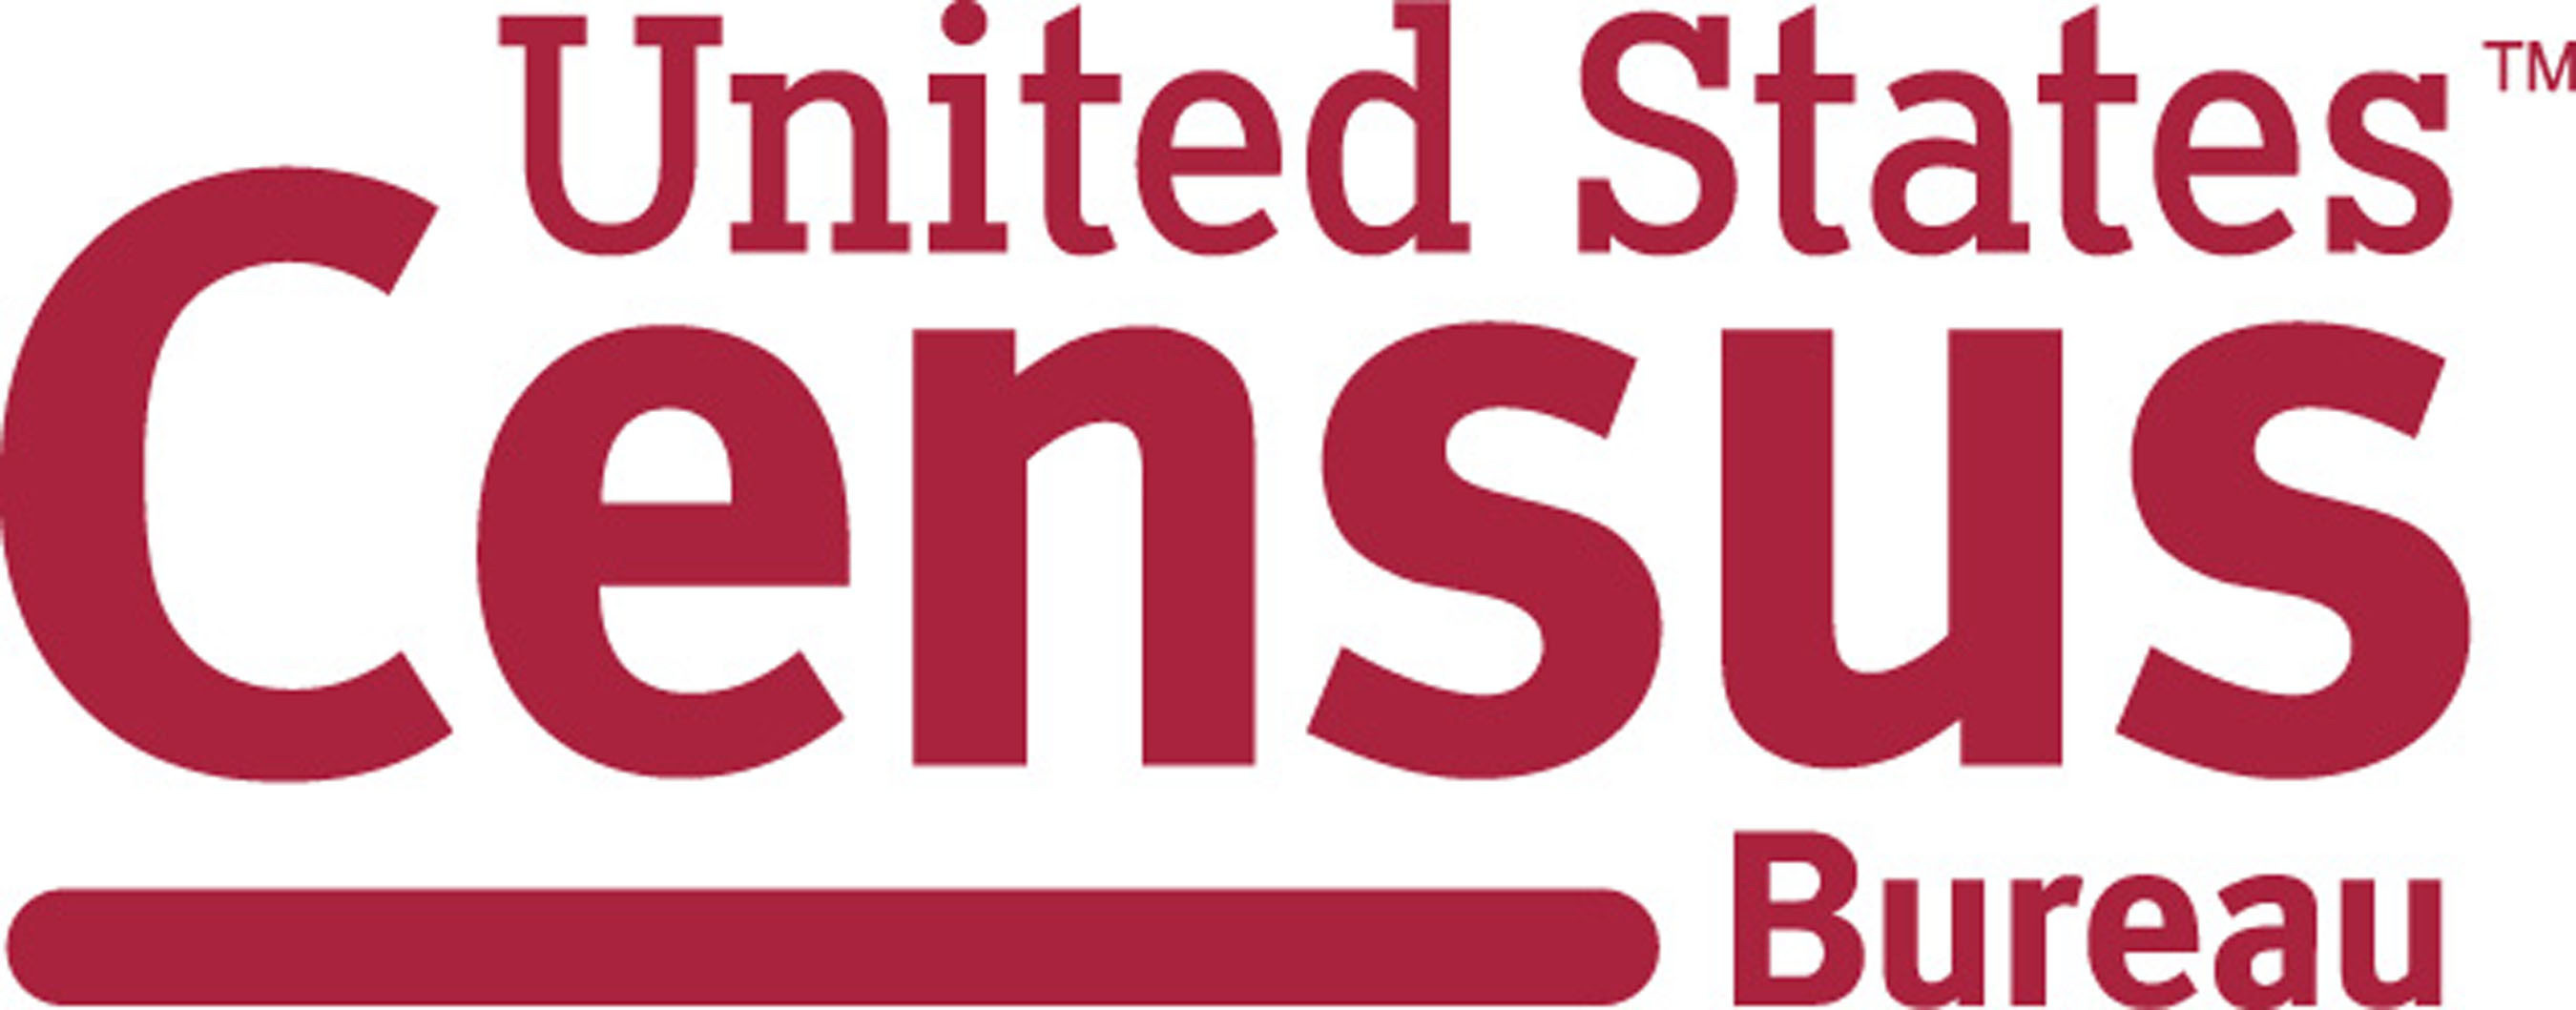 U.S. Census Bureau Logo. (PRNewsFoto/U.S. Census Bureau) (PRNewsFoto/)